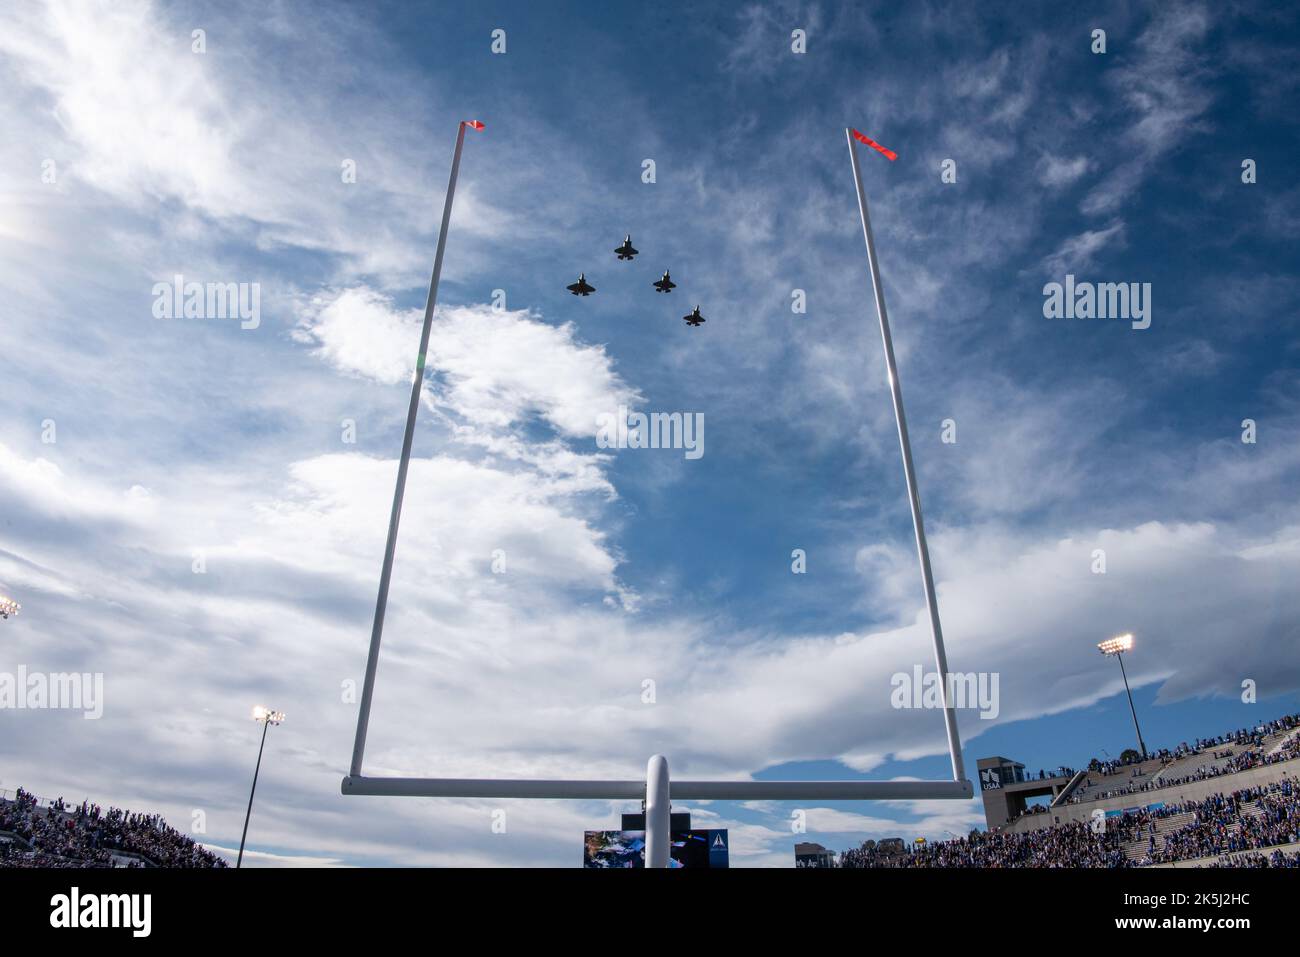 U.S. AIR FORCE ACADEMY, Colorado -- le stade Falcon de l'US Air Force F35 survole le stade avant un match de football contre la Marine à l'US Air Force Academy en octobre. 1, 2022. Air Force a remporté la victoire sur Marine 13-10. (É.-U. Photo de la Force aérienne par Justin R. Pacheco) Banque D'Images